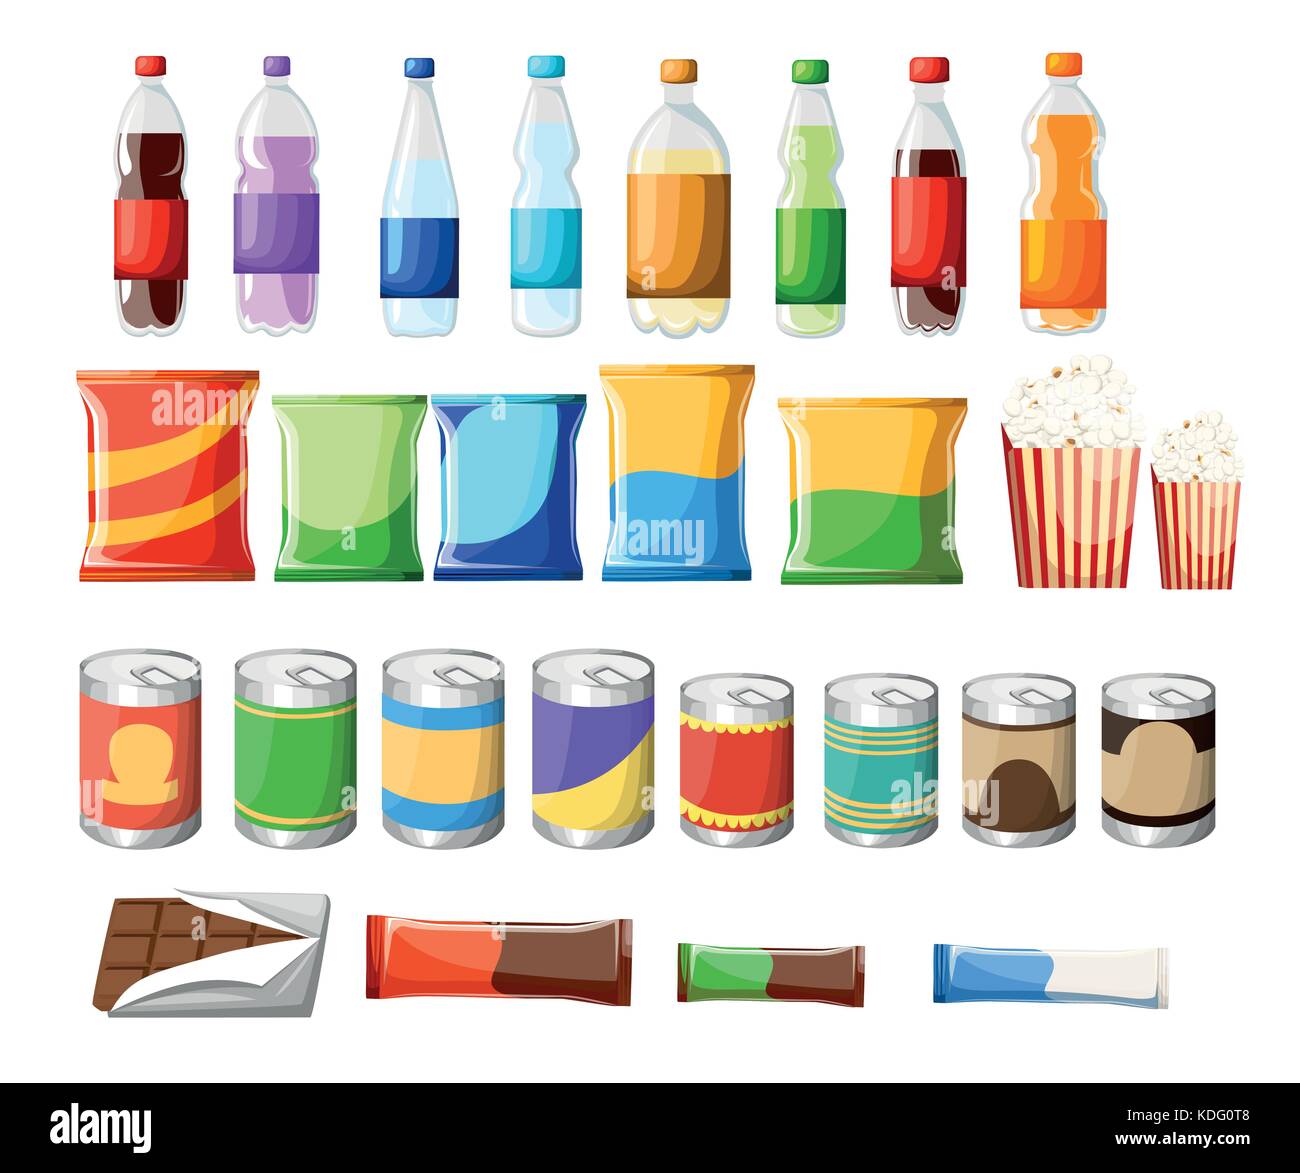 Automaten Produkt Elemente festlegen. Vektor flachbild Abbildung. Essen und Getränke Designelemente auf weißem Hintergrund. Fast Food Snacks und Getränke Stock Vektor